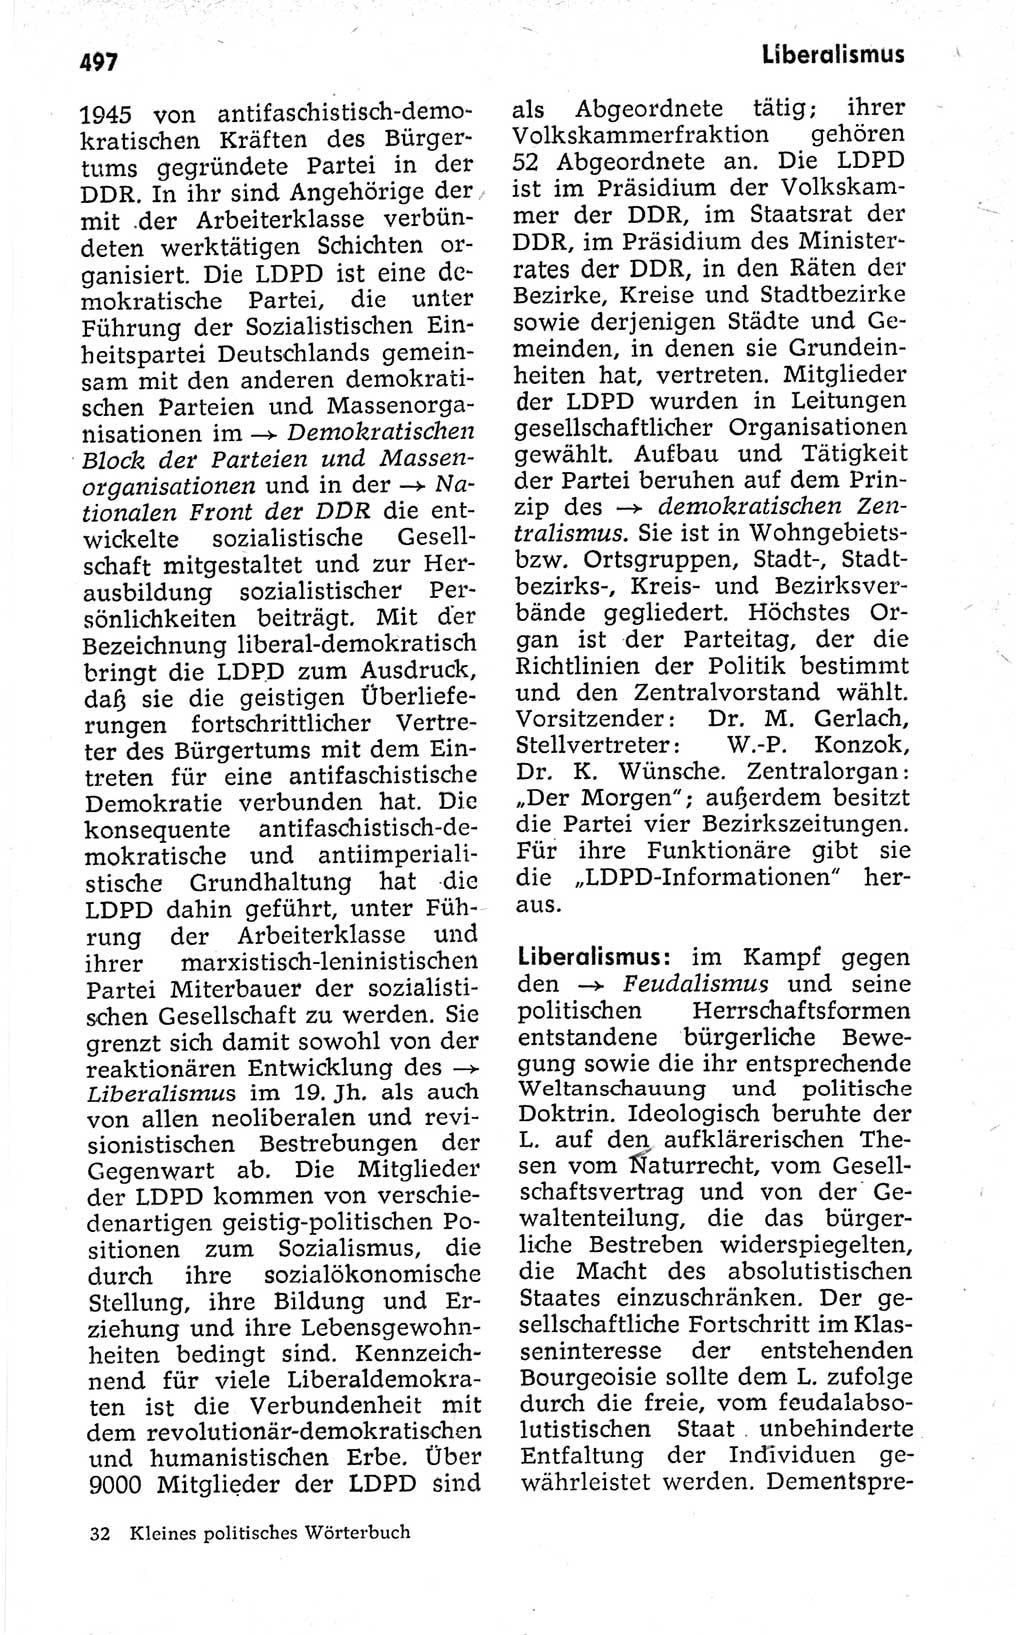 Kleines politisches Wörterbuch [Deutsche Demokratische Republik (DDR)] 1973, Seite 497 (Kl. pol. Wb. DDR 1973, S. 497)